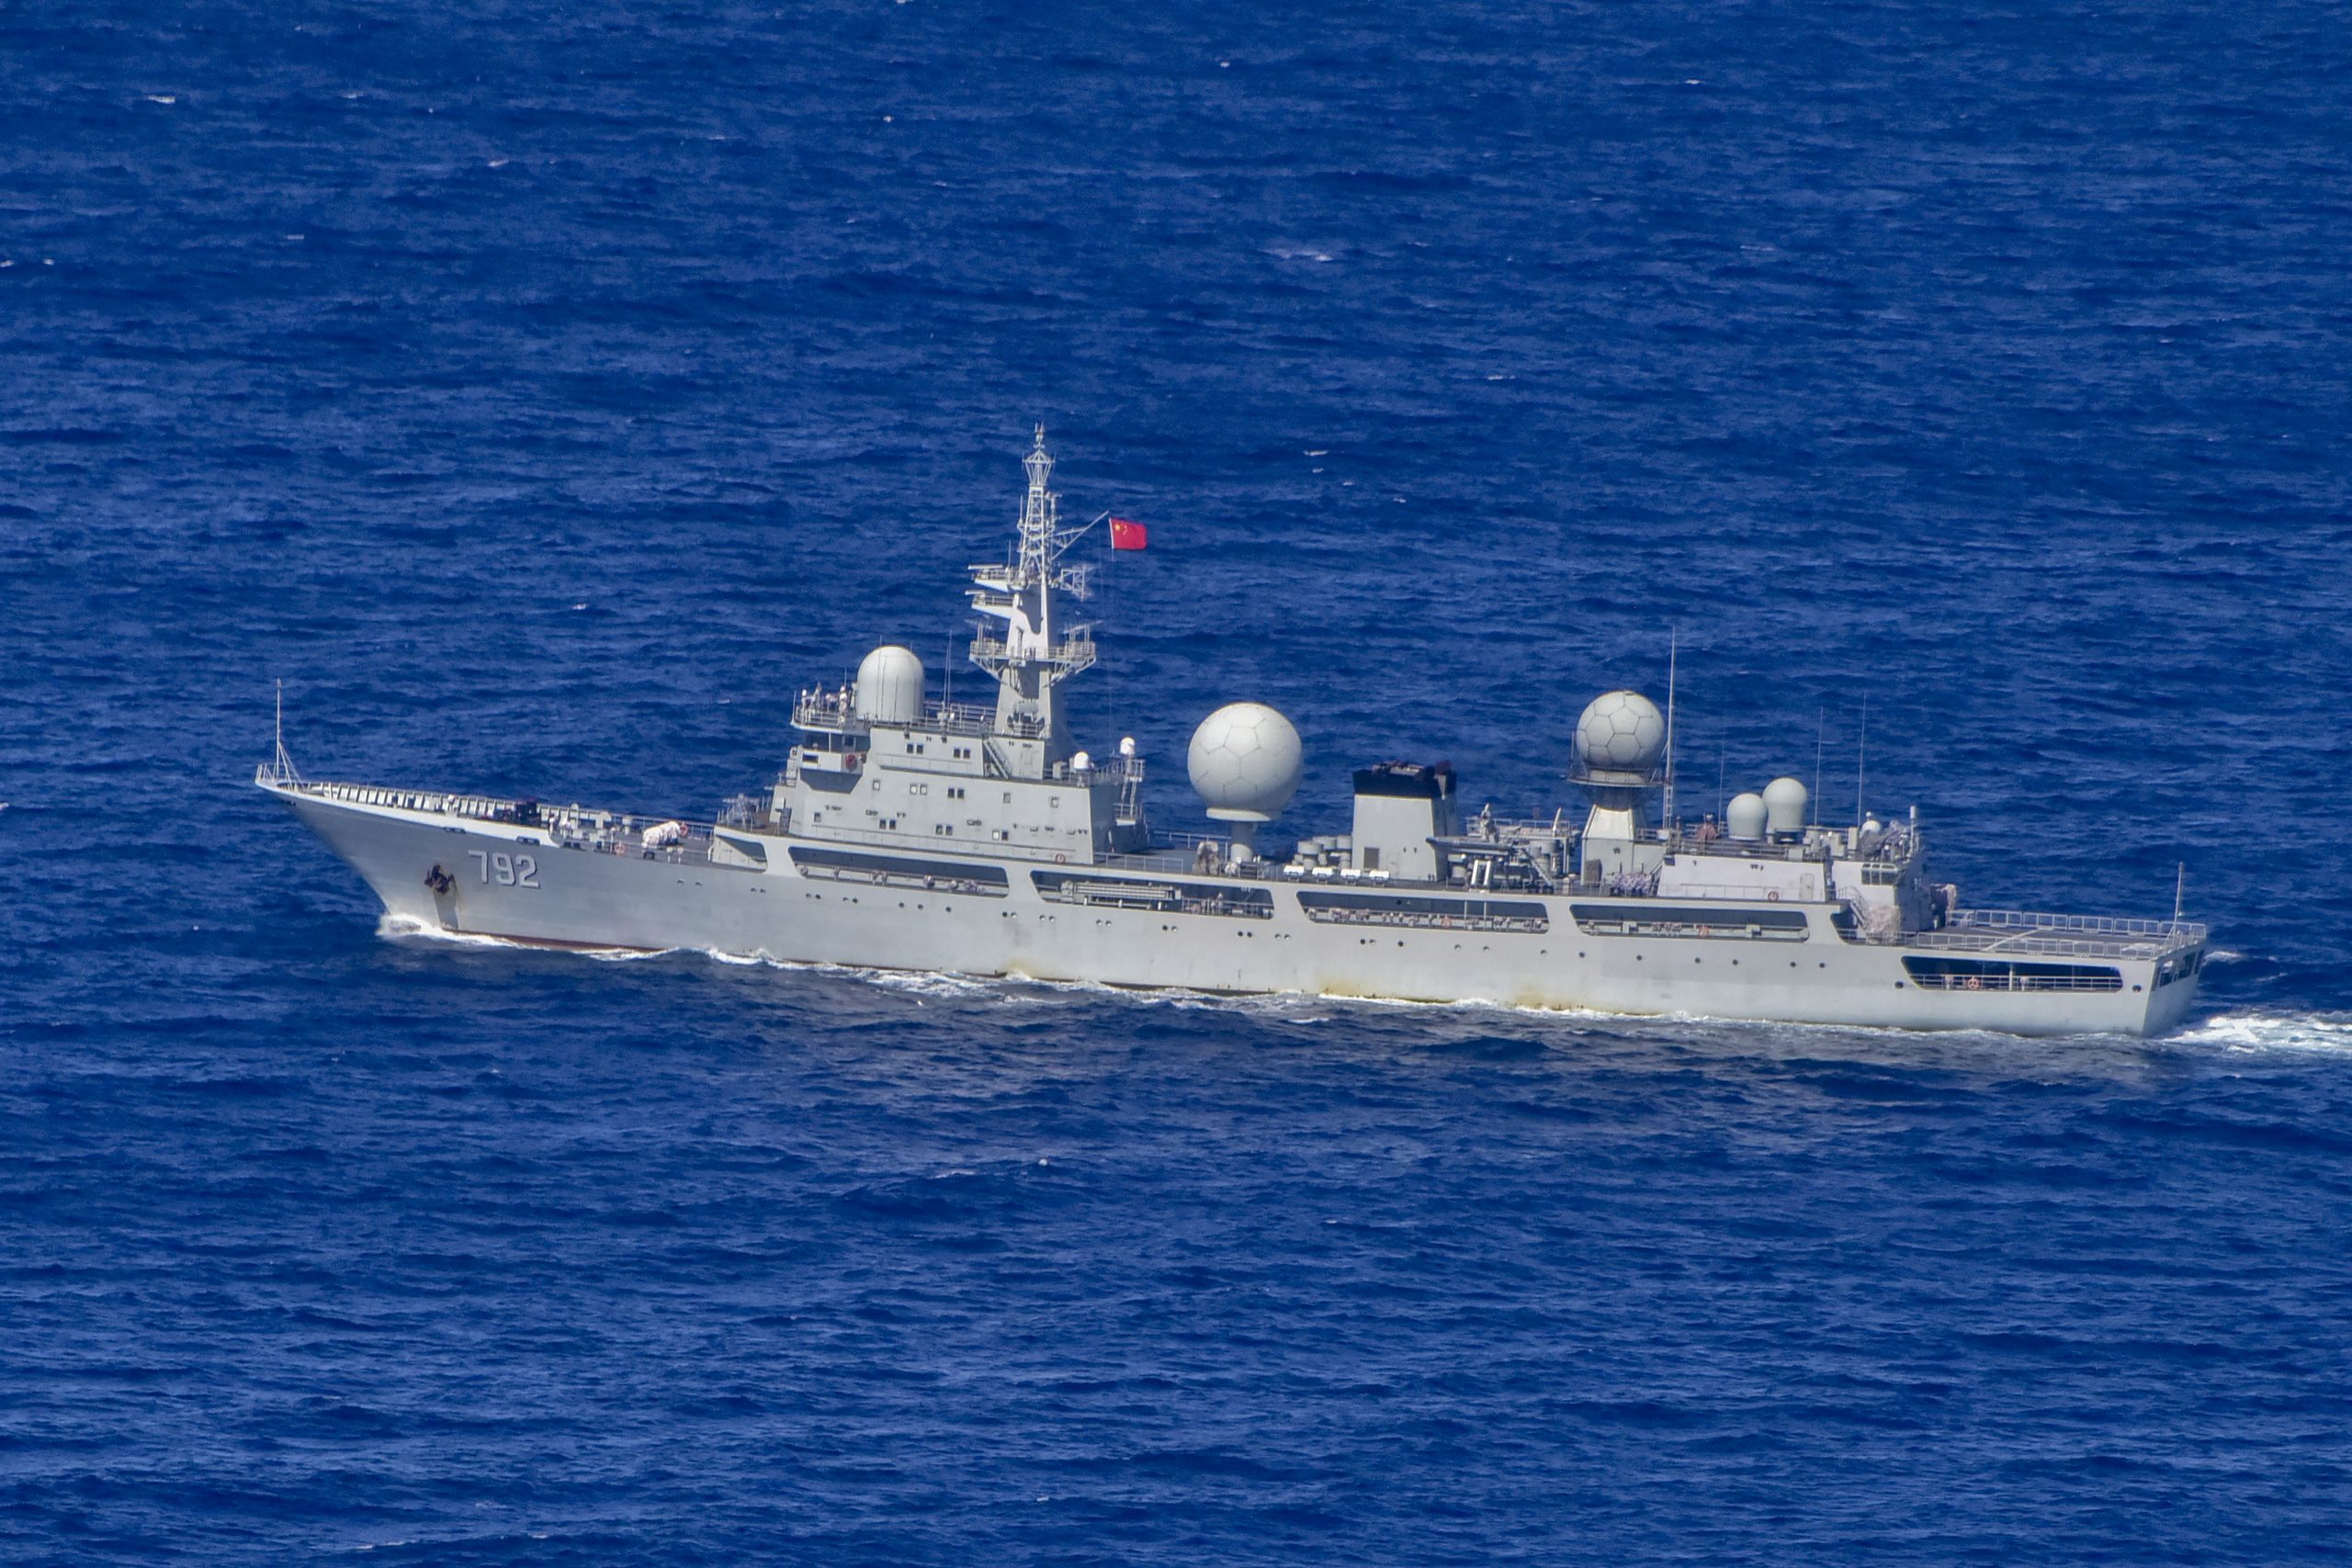 看世界）澳防长：中国情报船现身澳西海岸为“侵略行为”